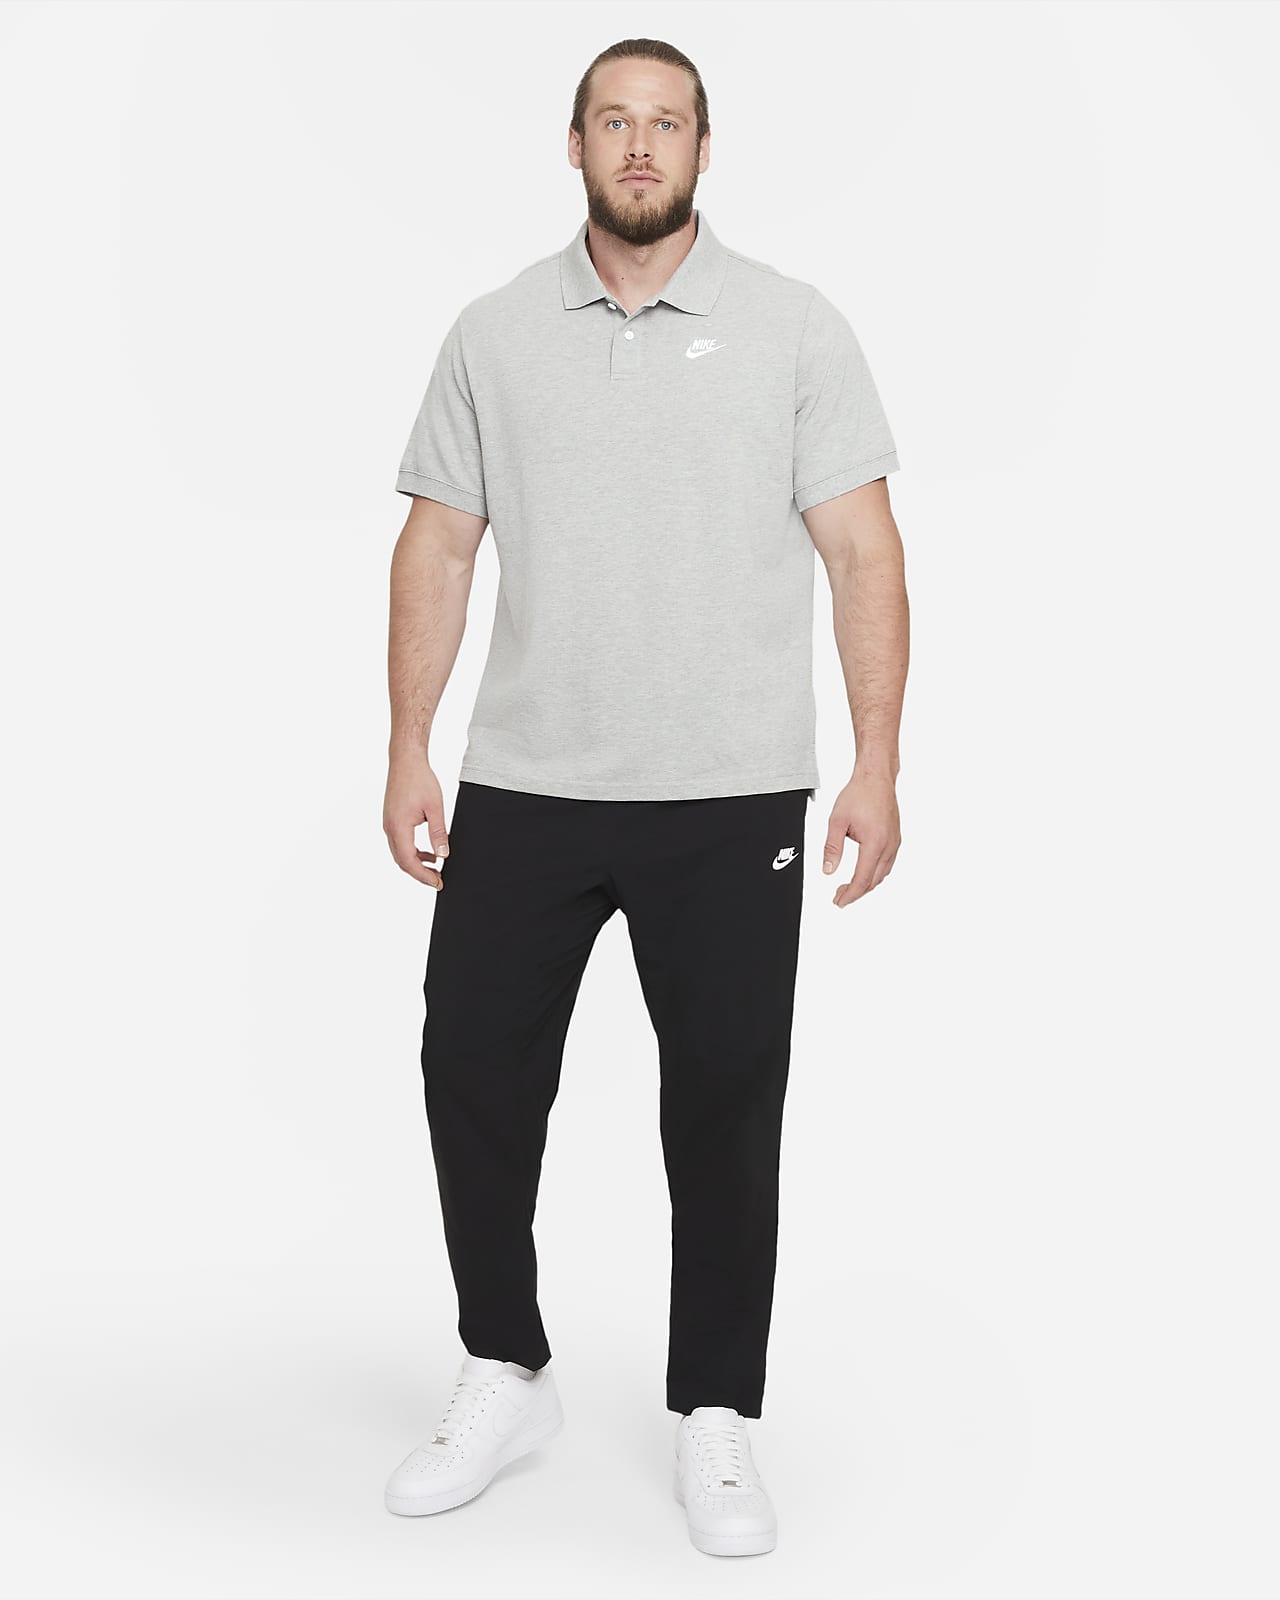 kloon Roei uit vraag naar Nike Sportswear Herren-Poloshirt. Nike AT